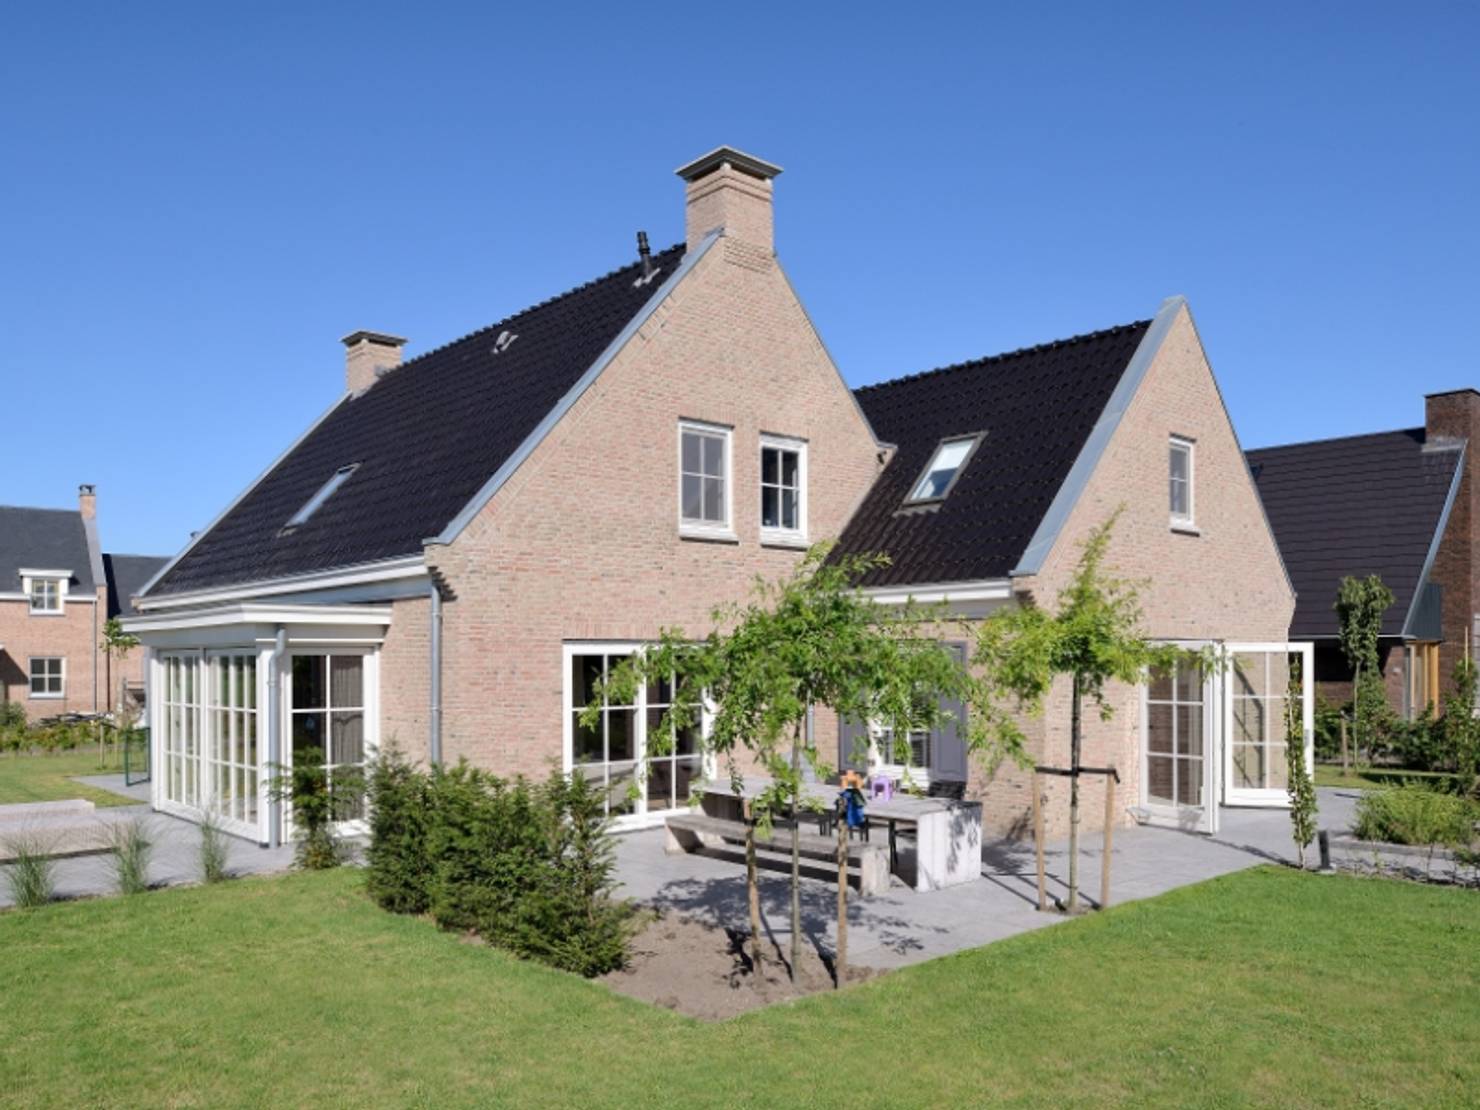 Проект кирпичного дома в голландском стиле- фотографии
				